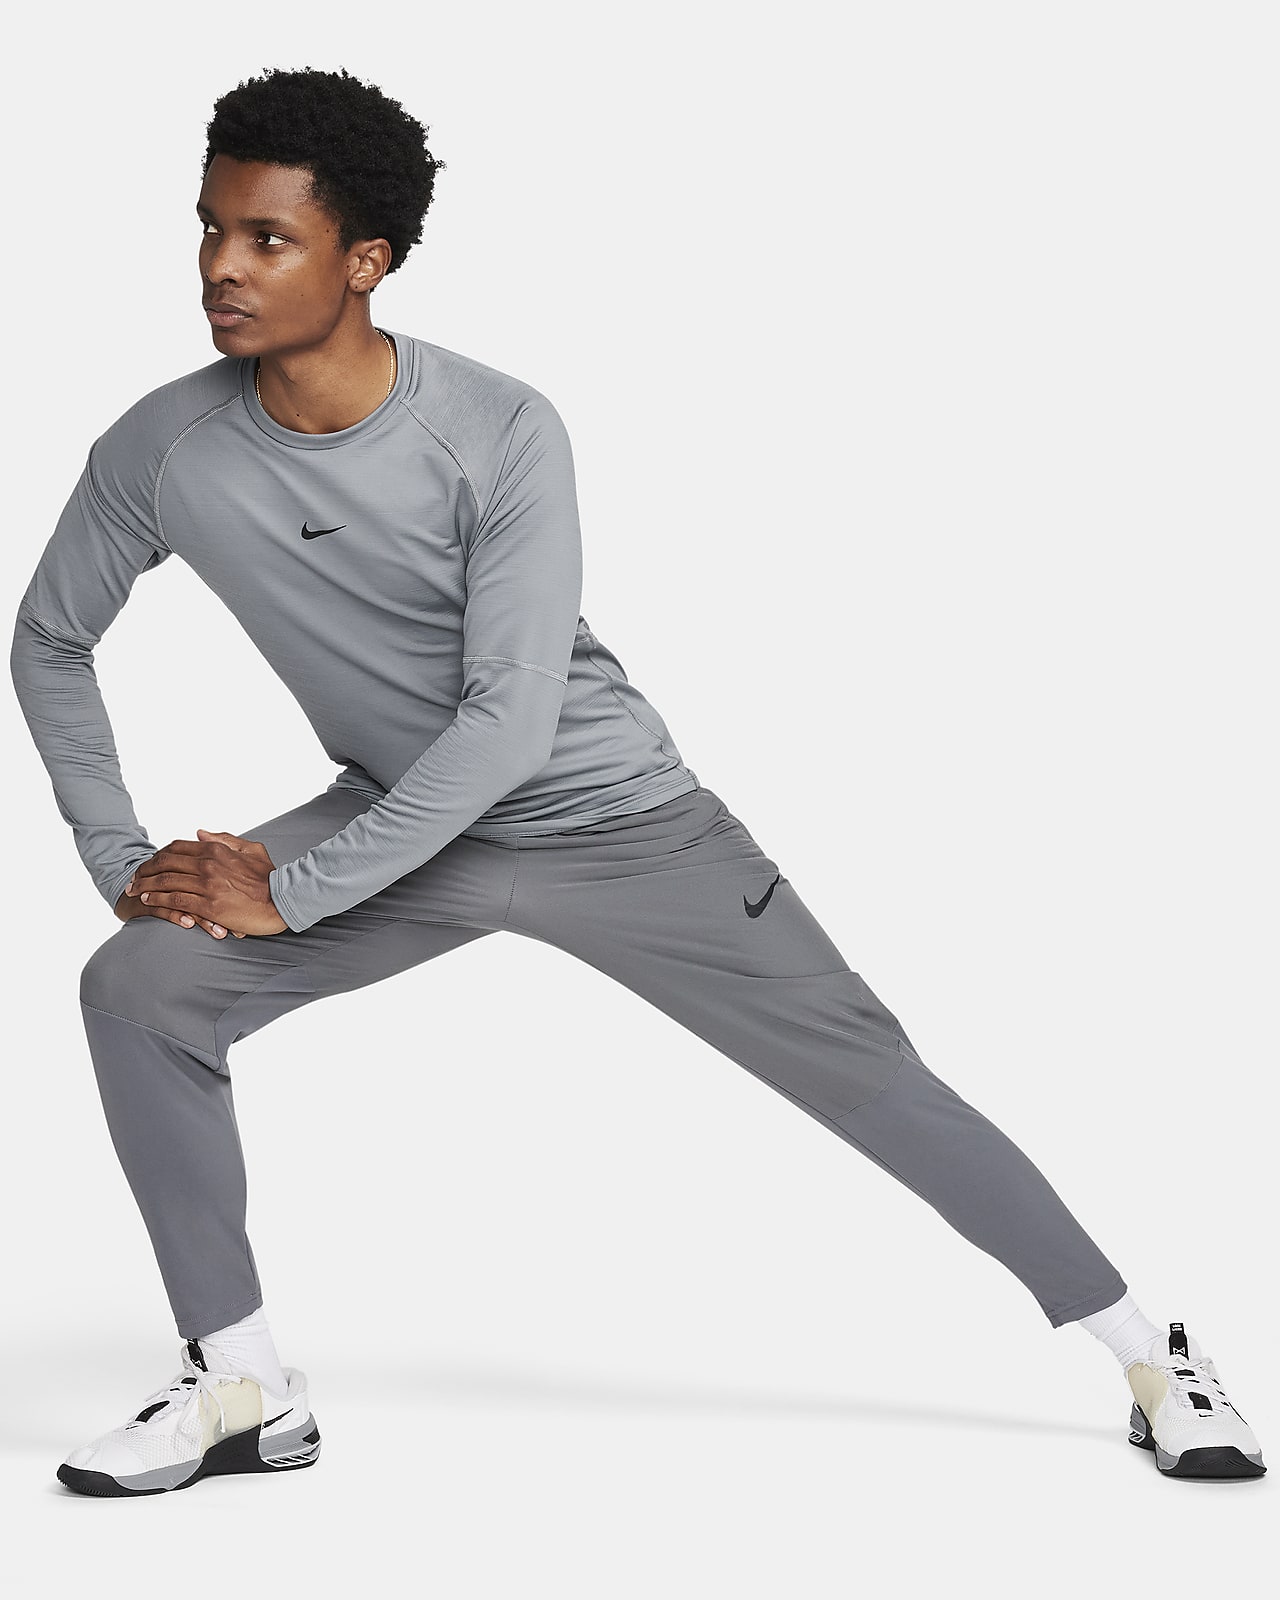 Nike Pro Warm Men's Long-Sleeve Top